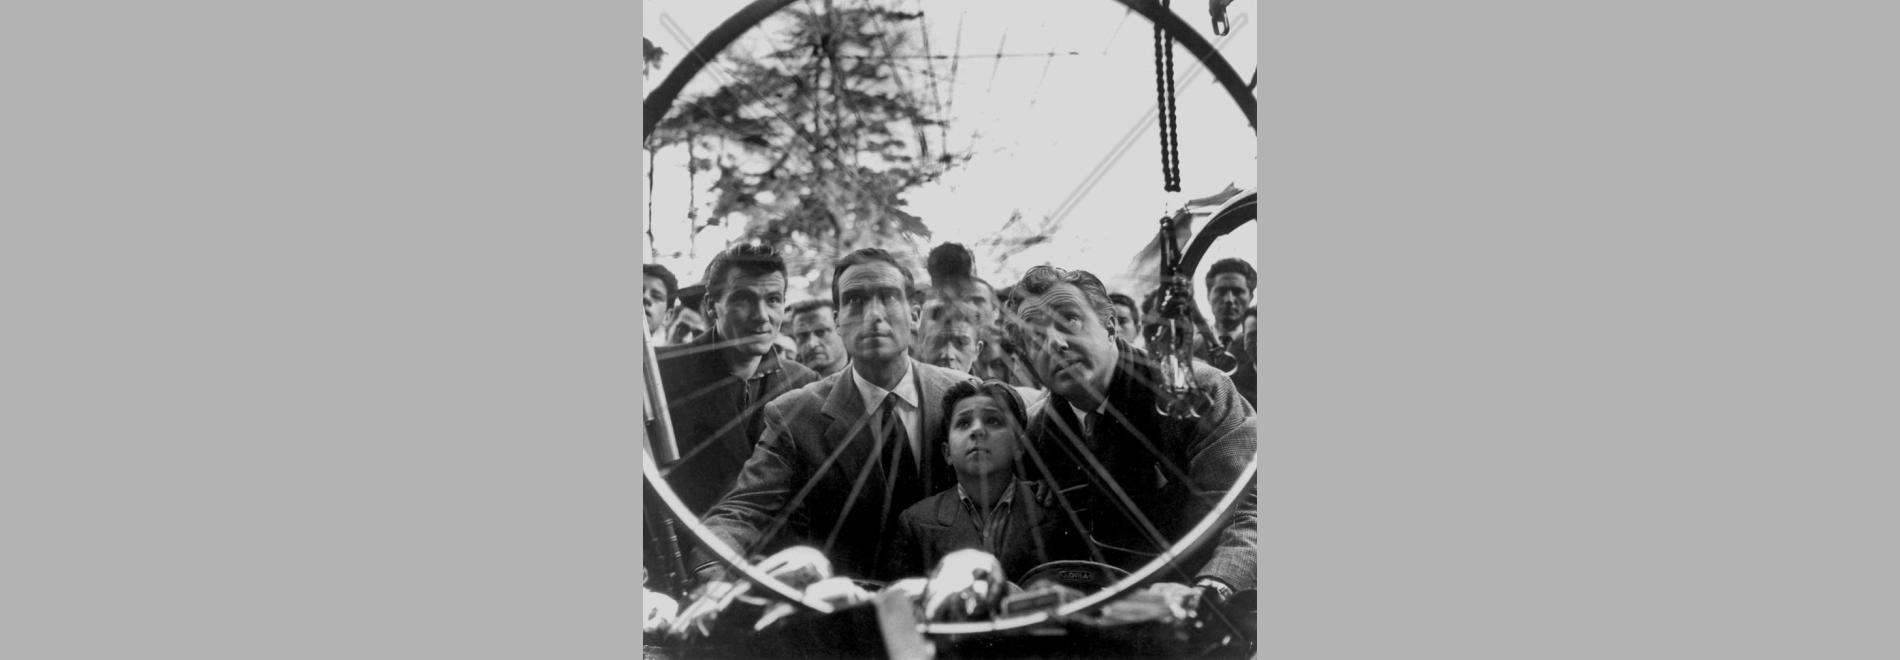 Ladri di biciclette (Vittorio De Sica, 1948)